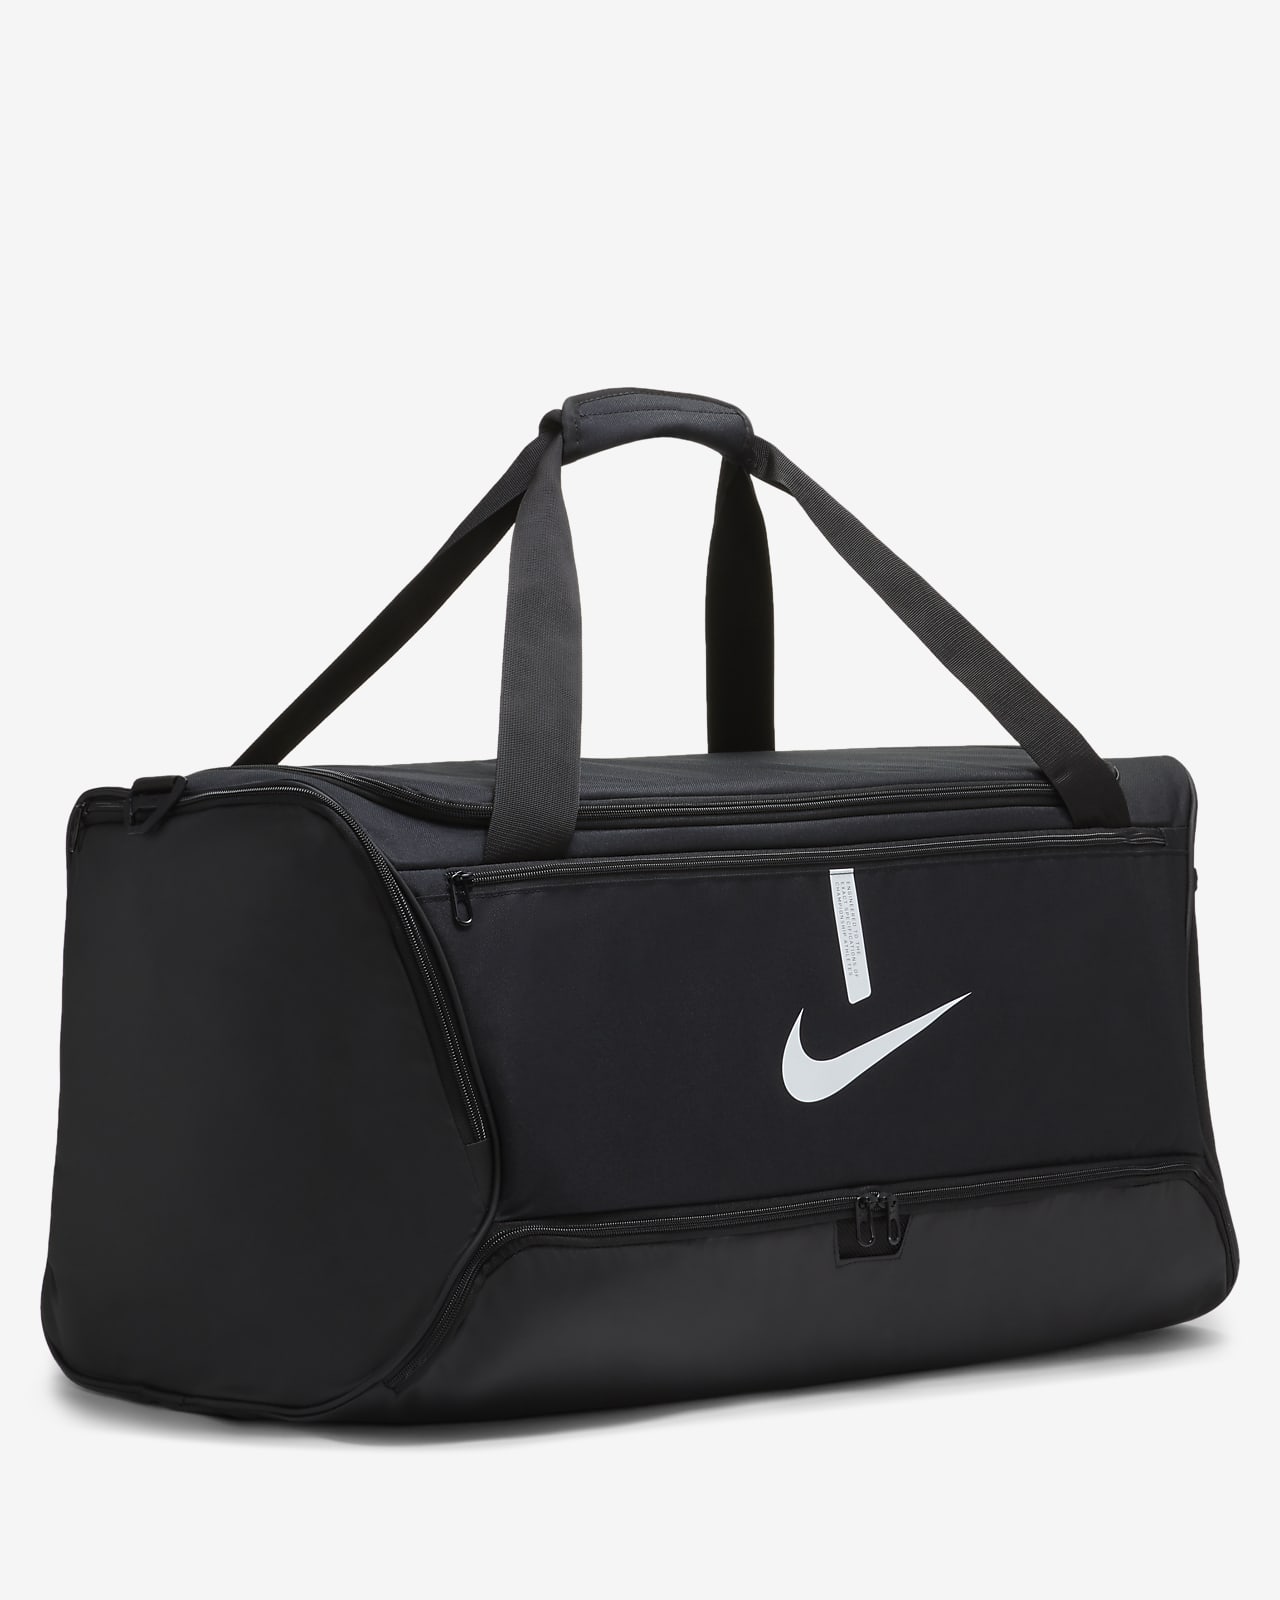 Nike Academy Team Backpack Black/White